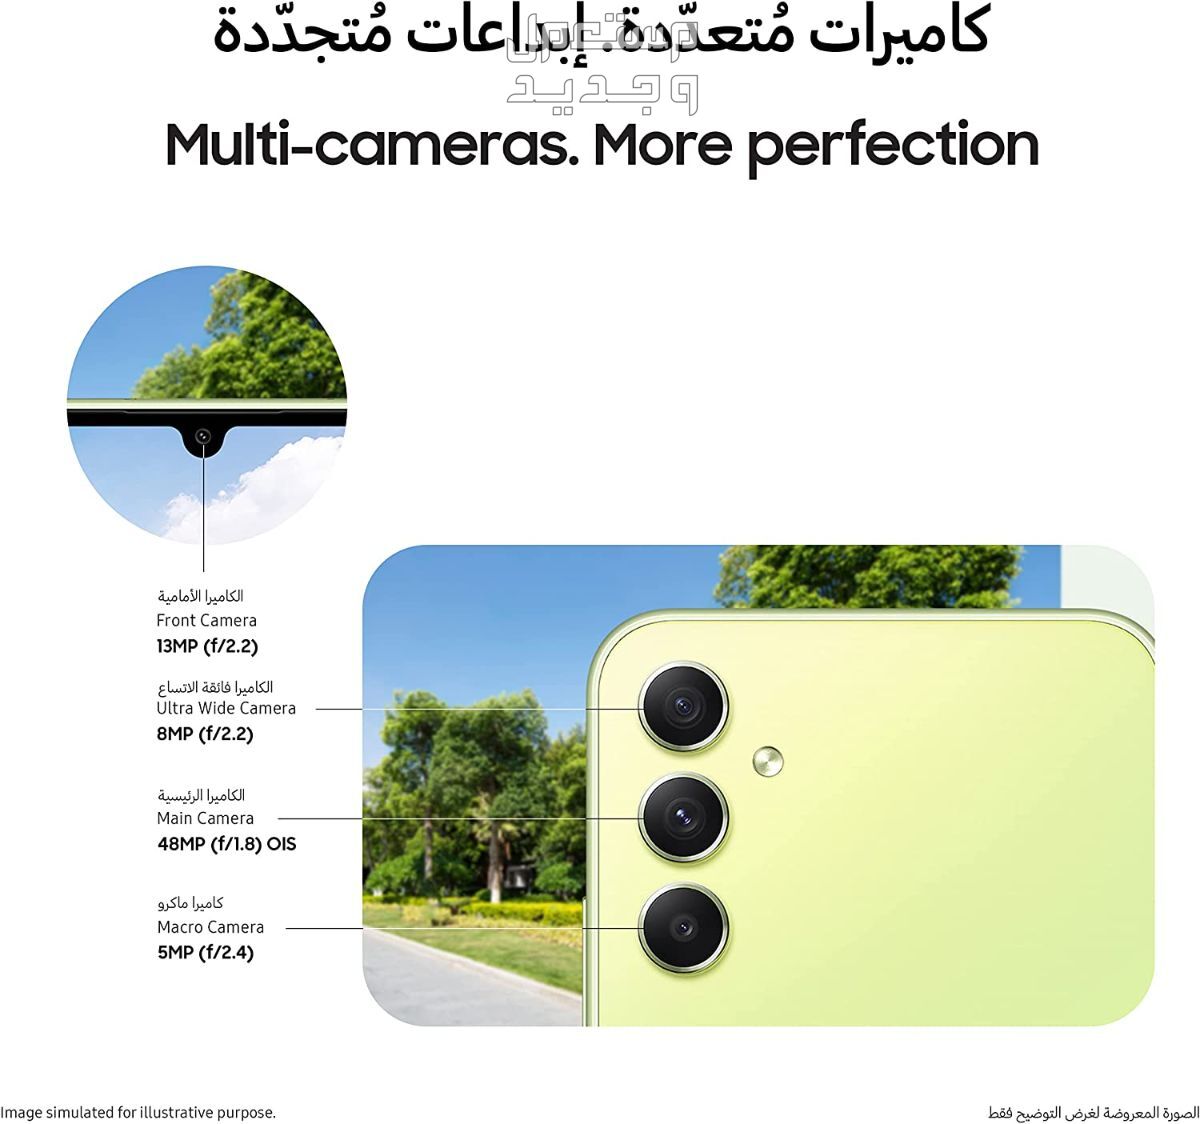 التطور المذهل للهواتف الذكية: إصدار سامسونج الأخير في تونس إصدار سامسونج الأخير